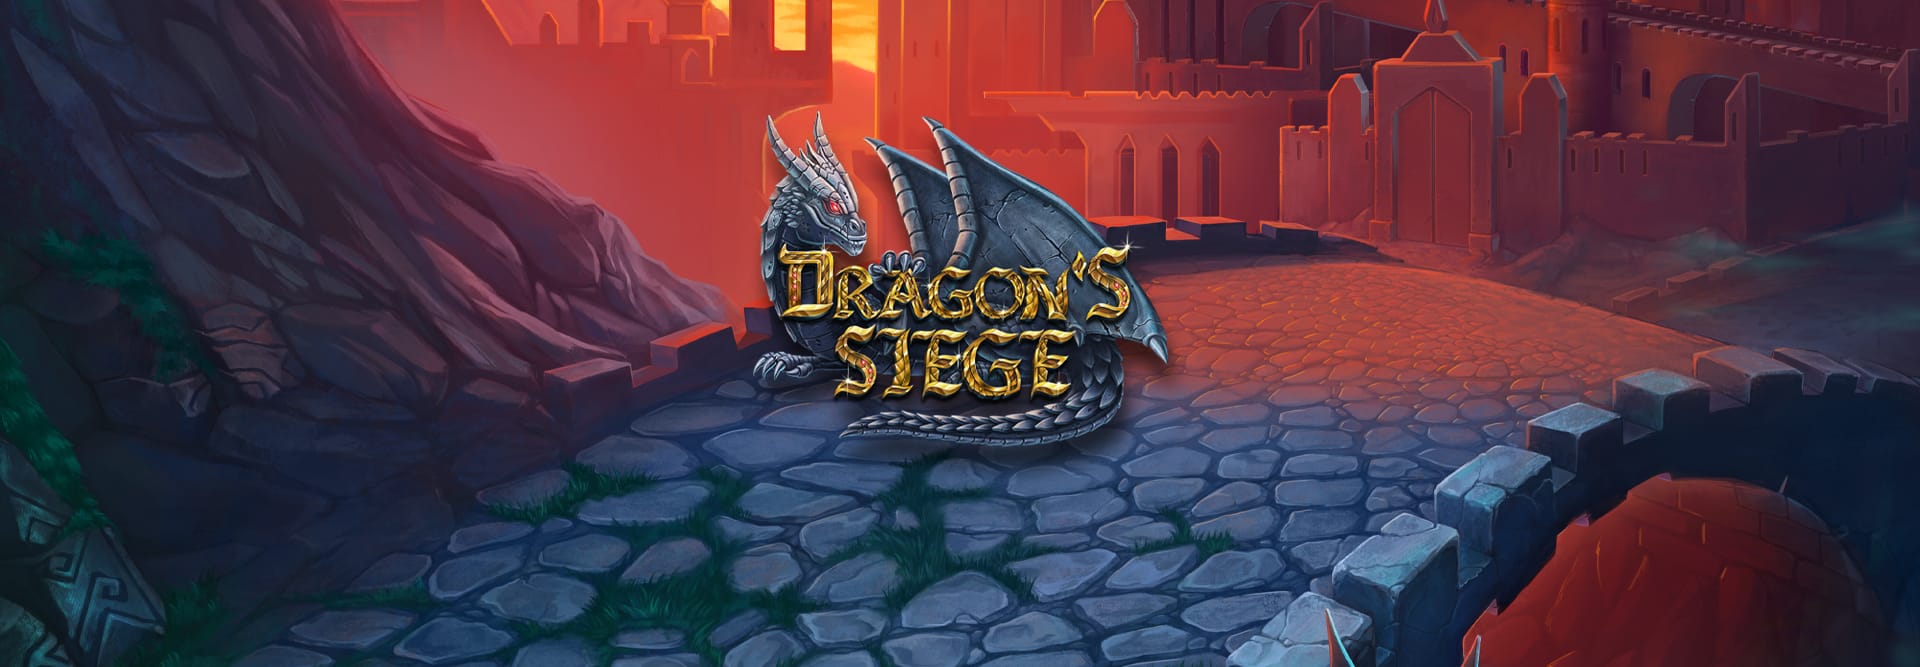 dragon's siege